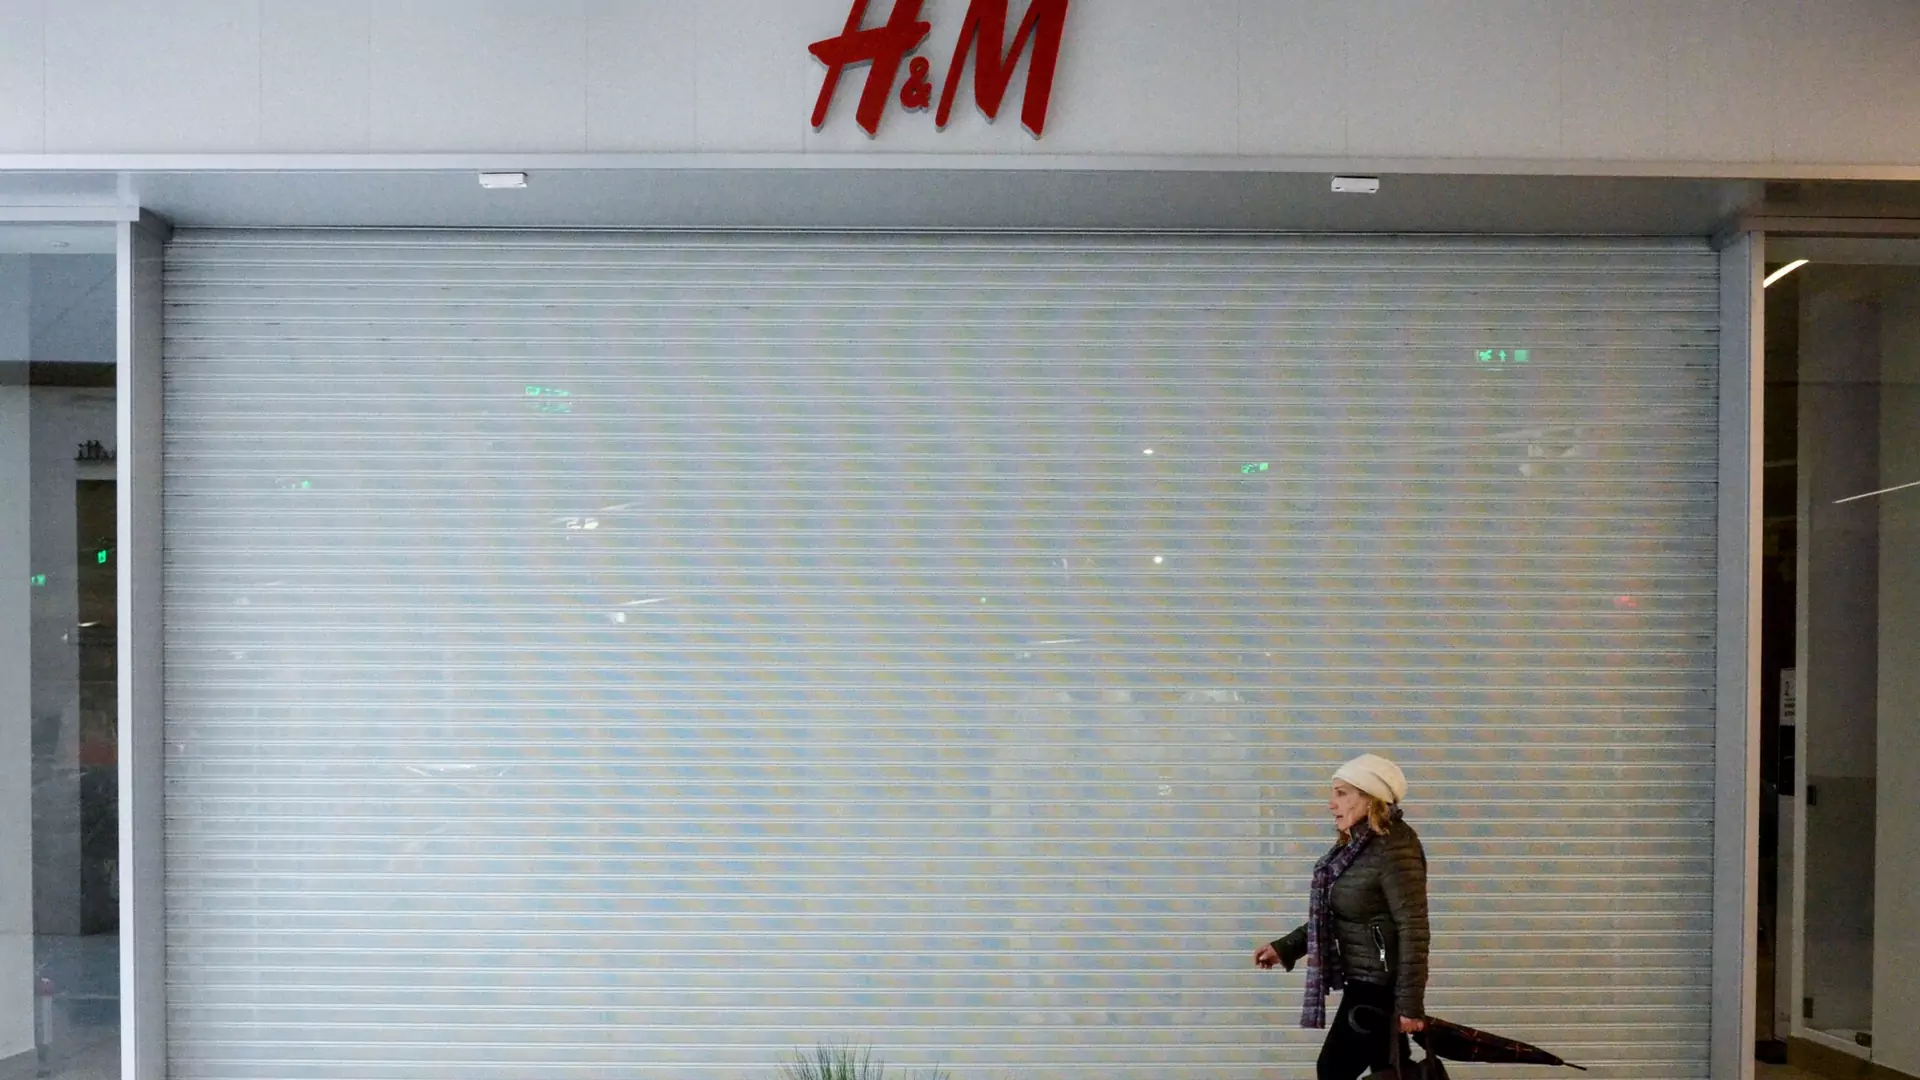 Rosjanin pozwał H&M. Absurdalny powód. "Nikt nie ma prawa naruszać zaspokajania potrzeb" 